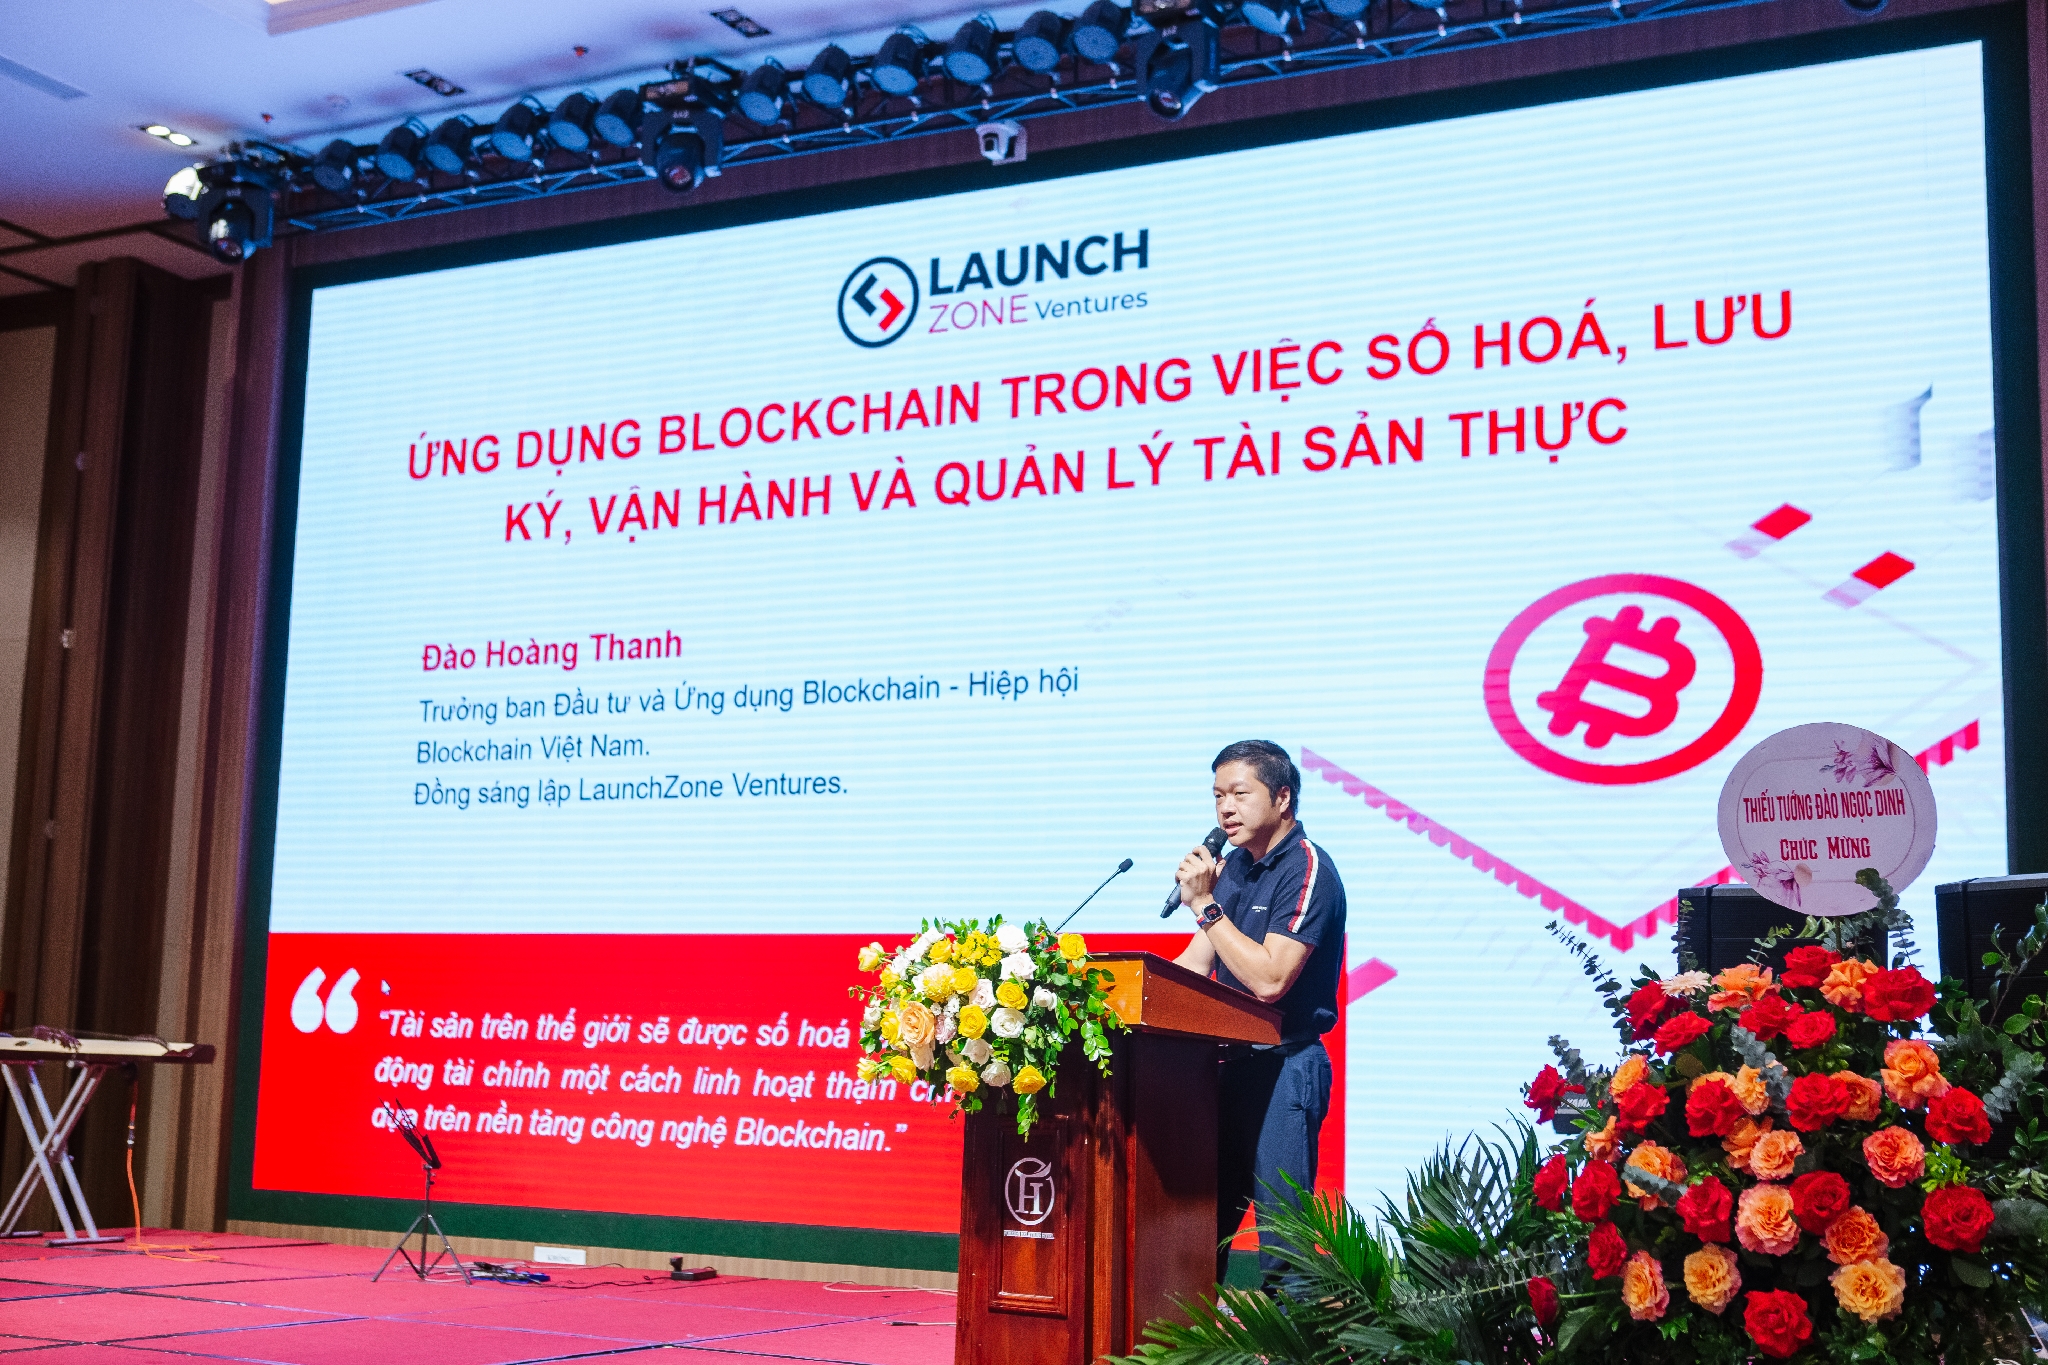 Ông Đào Hoàng Thanh – Founder LaunchZone